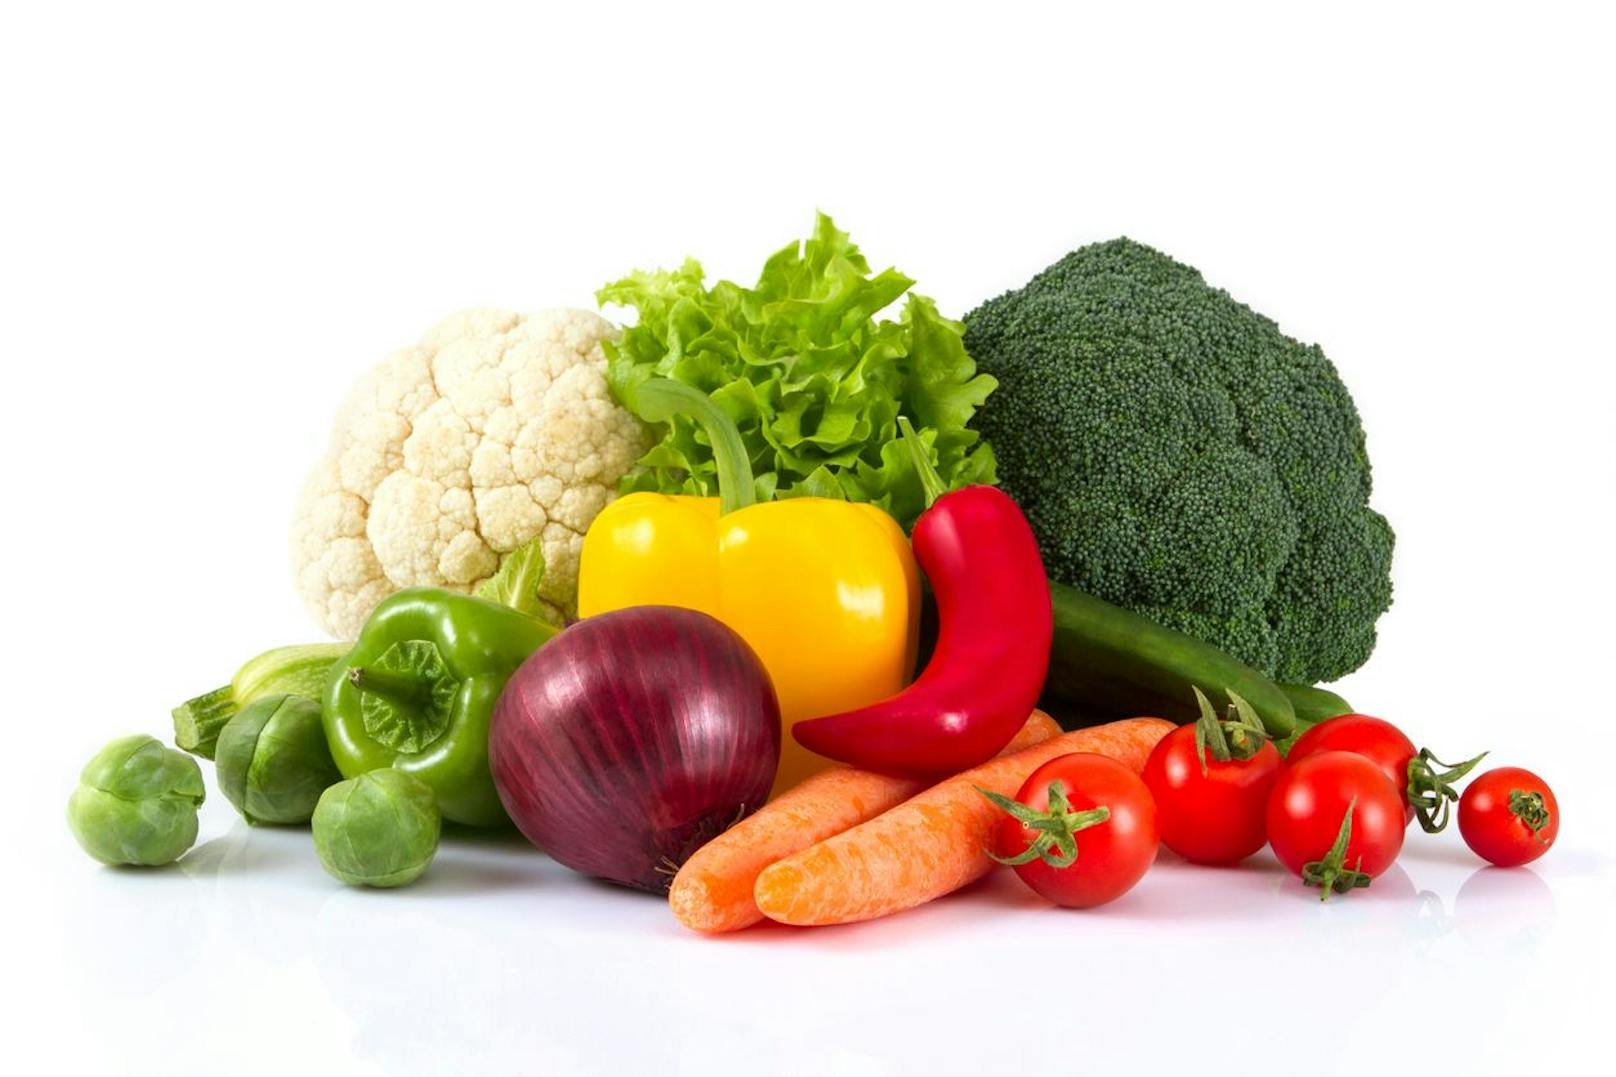 Vergiss nicht, dass sich auch in einigen Gemüsearten viel Vitamin C finden lässt. Aus Brokkoli, Paprika und Rucola lassen sich tolle Gerichte vorbereiten, die dich schlank halten. 